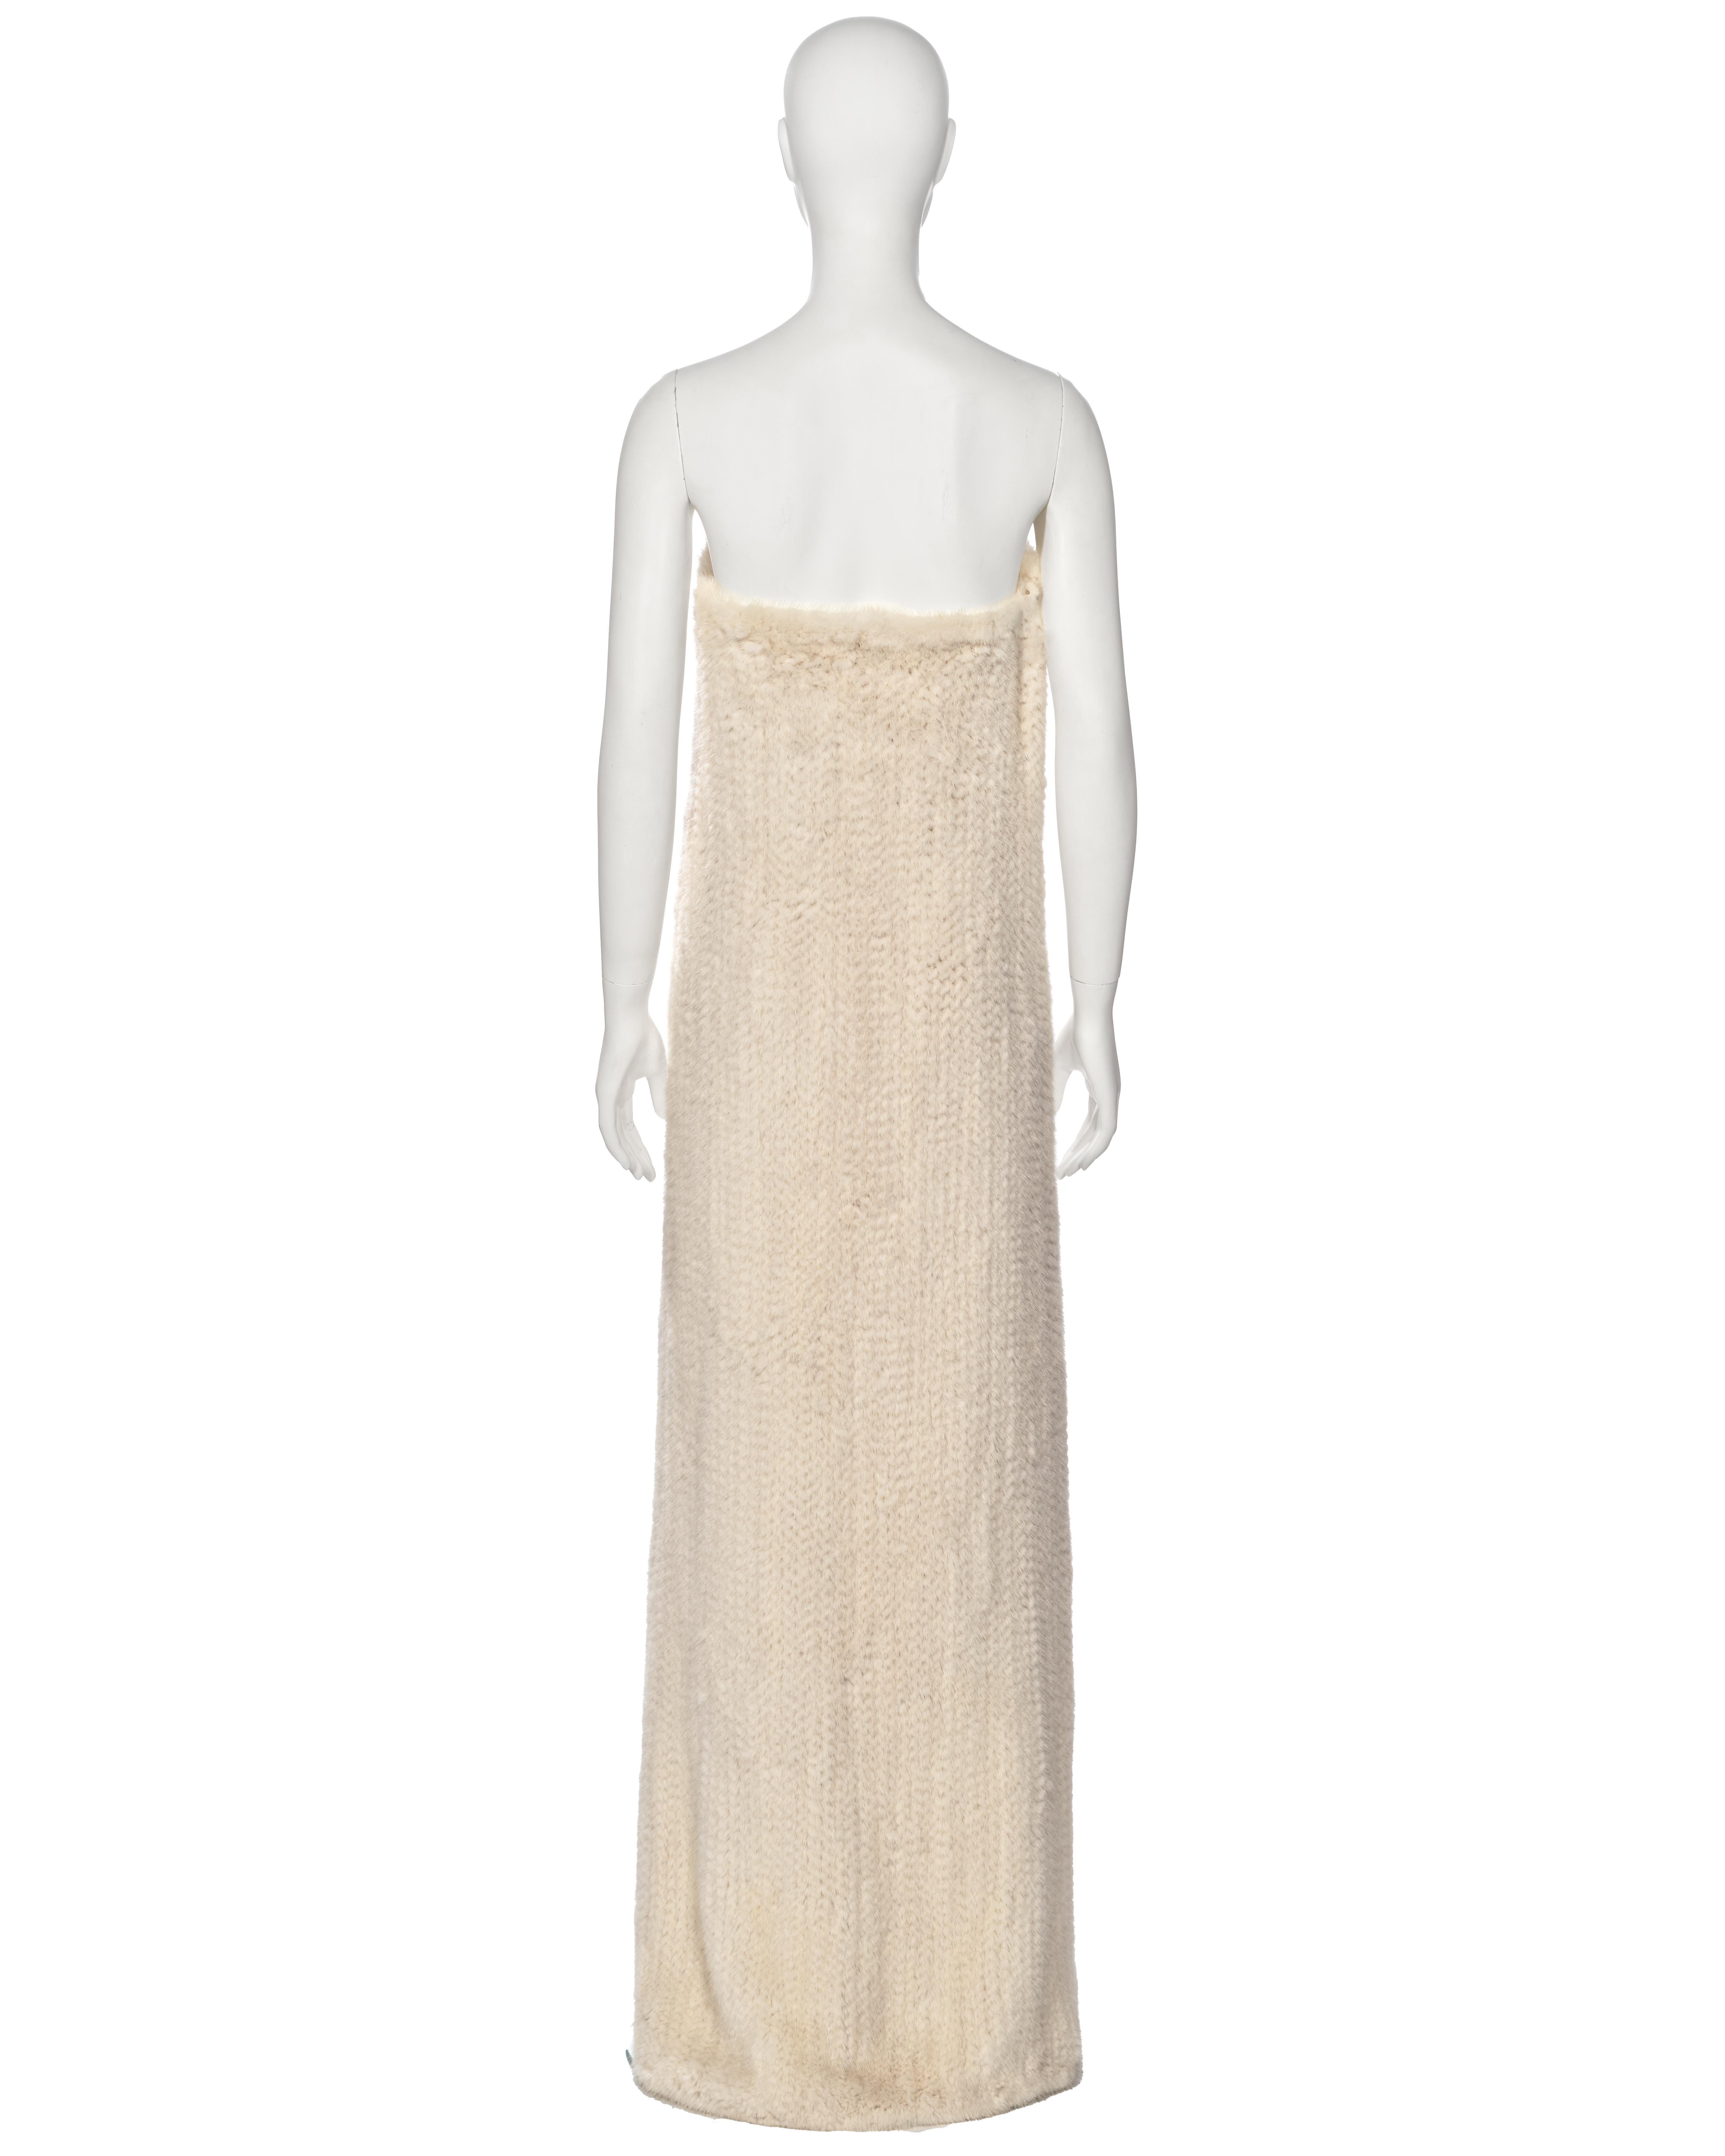 Mila Schön White Knitted Mink Fur Strapless Dress, fw 1999 For Sale 5